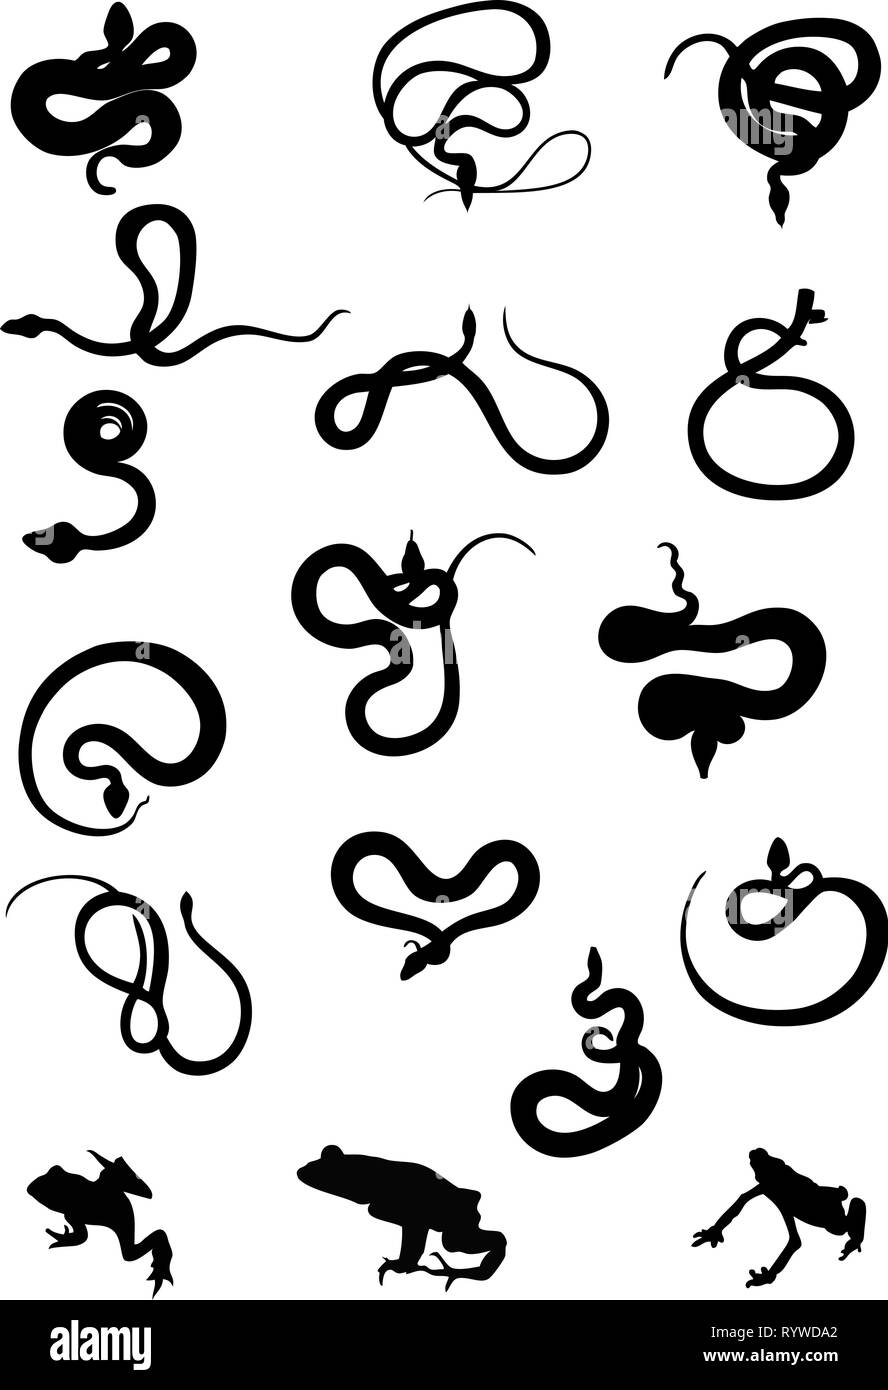 L'illustration montre un ensemble de silhouettes de serpents différents en couleur noir. Illustration de Vecteur